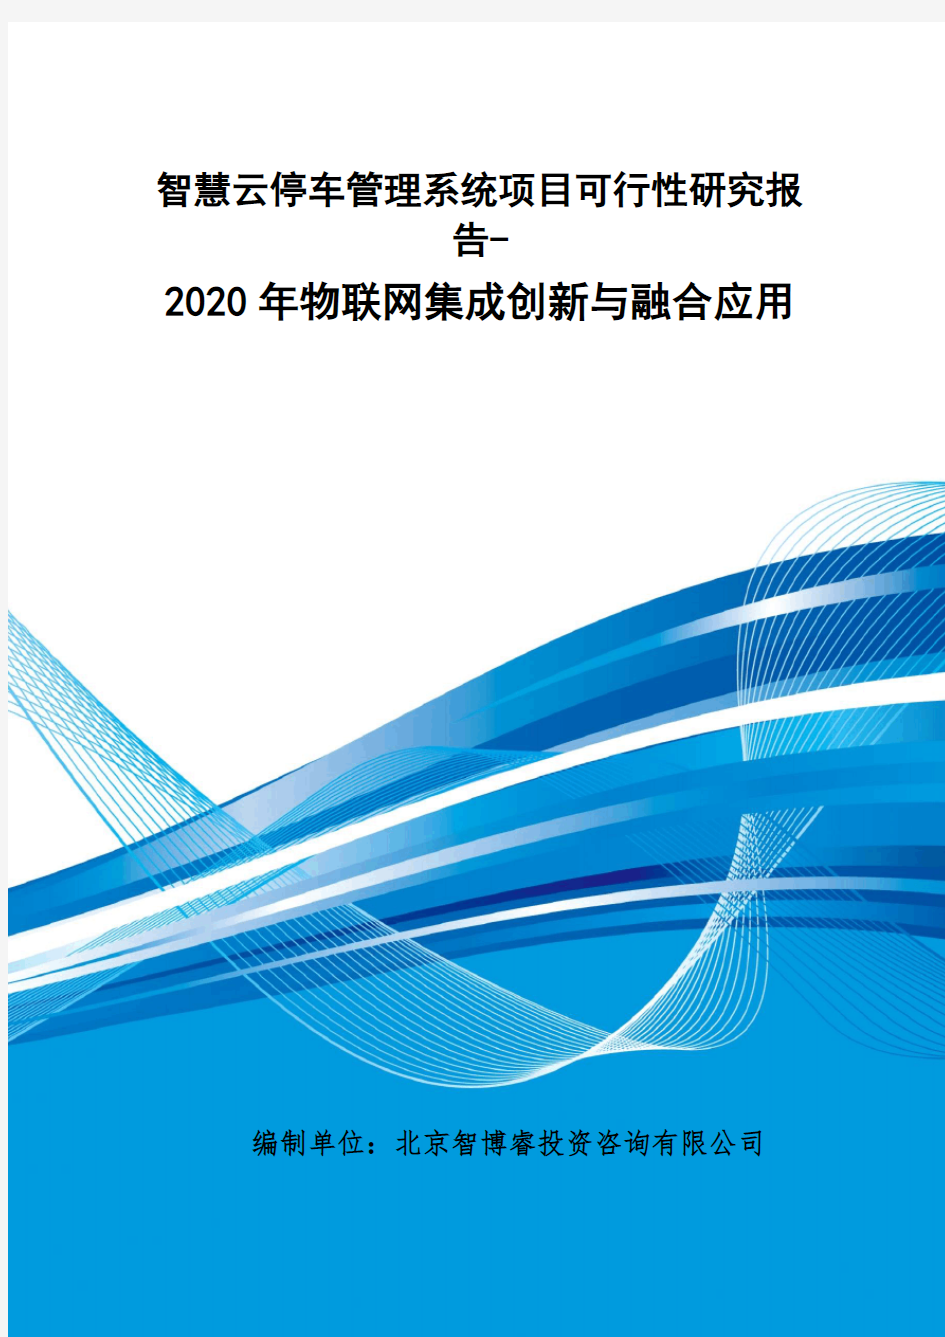 智慧云停车管理系统项目可行性研究报告-2020年物联网集成创新与融合应用